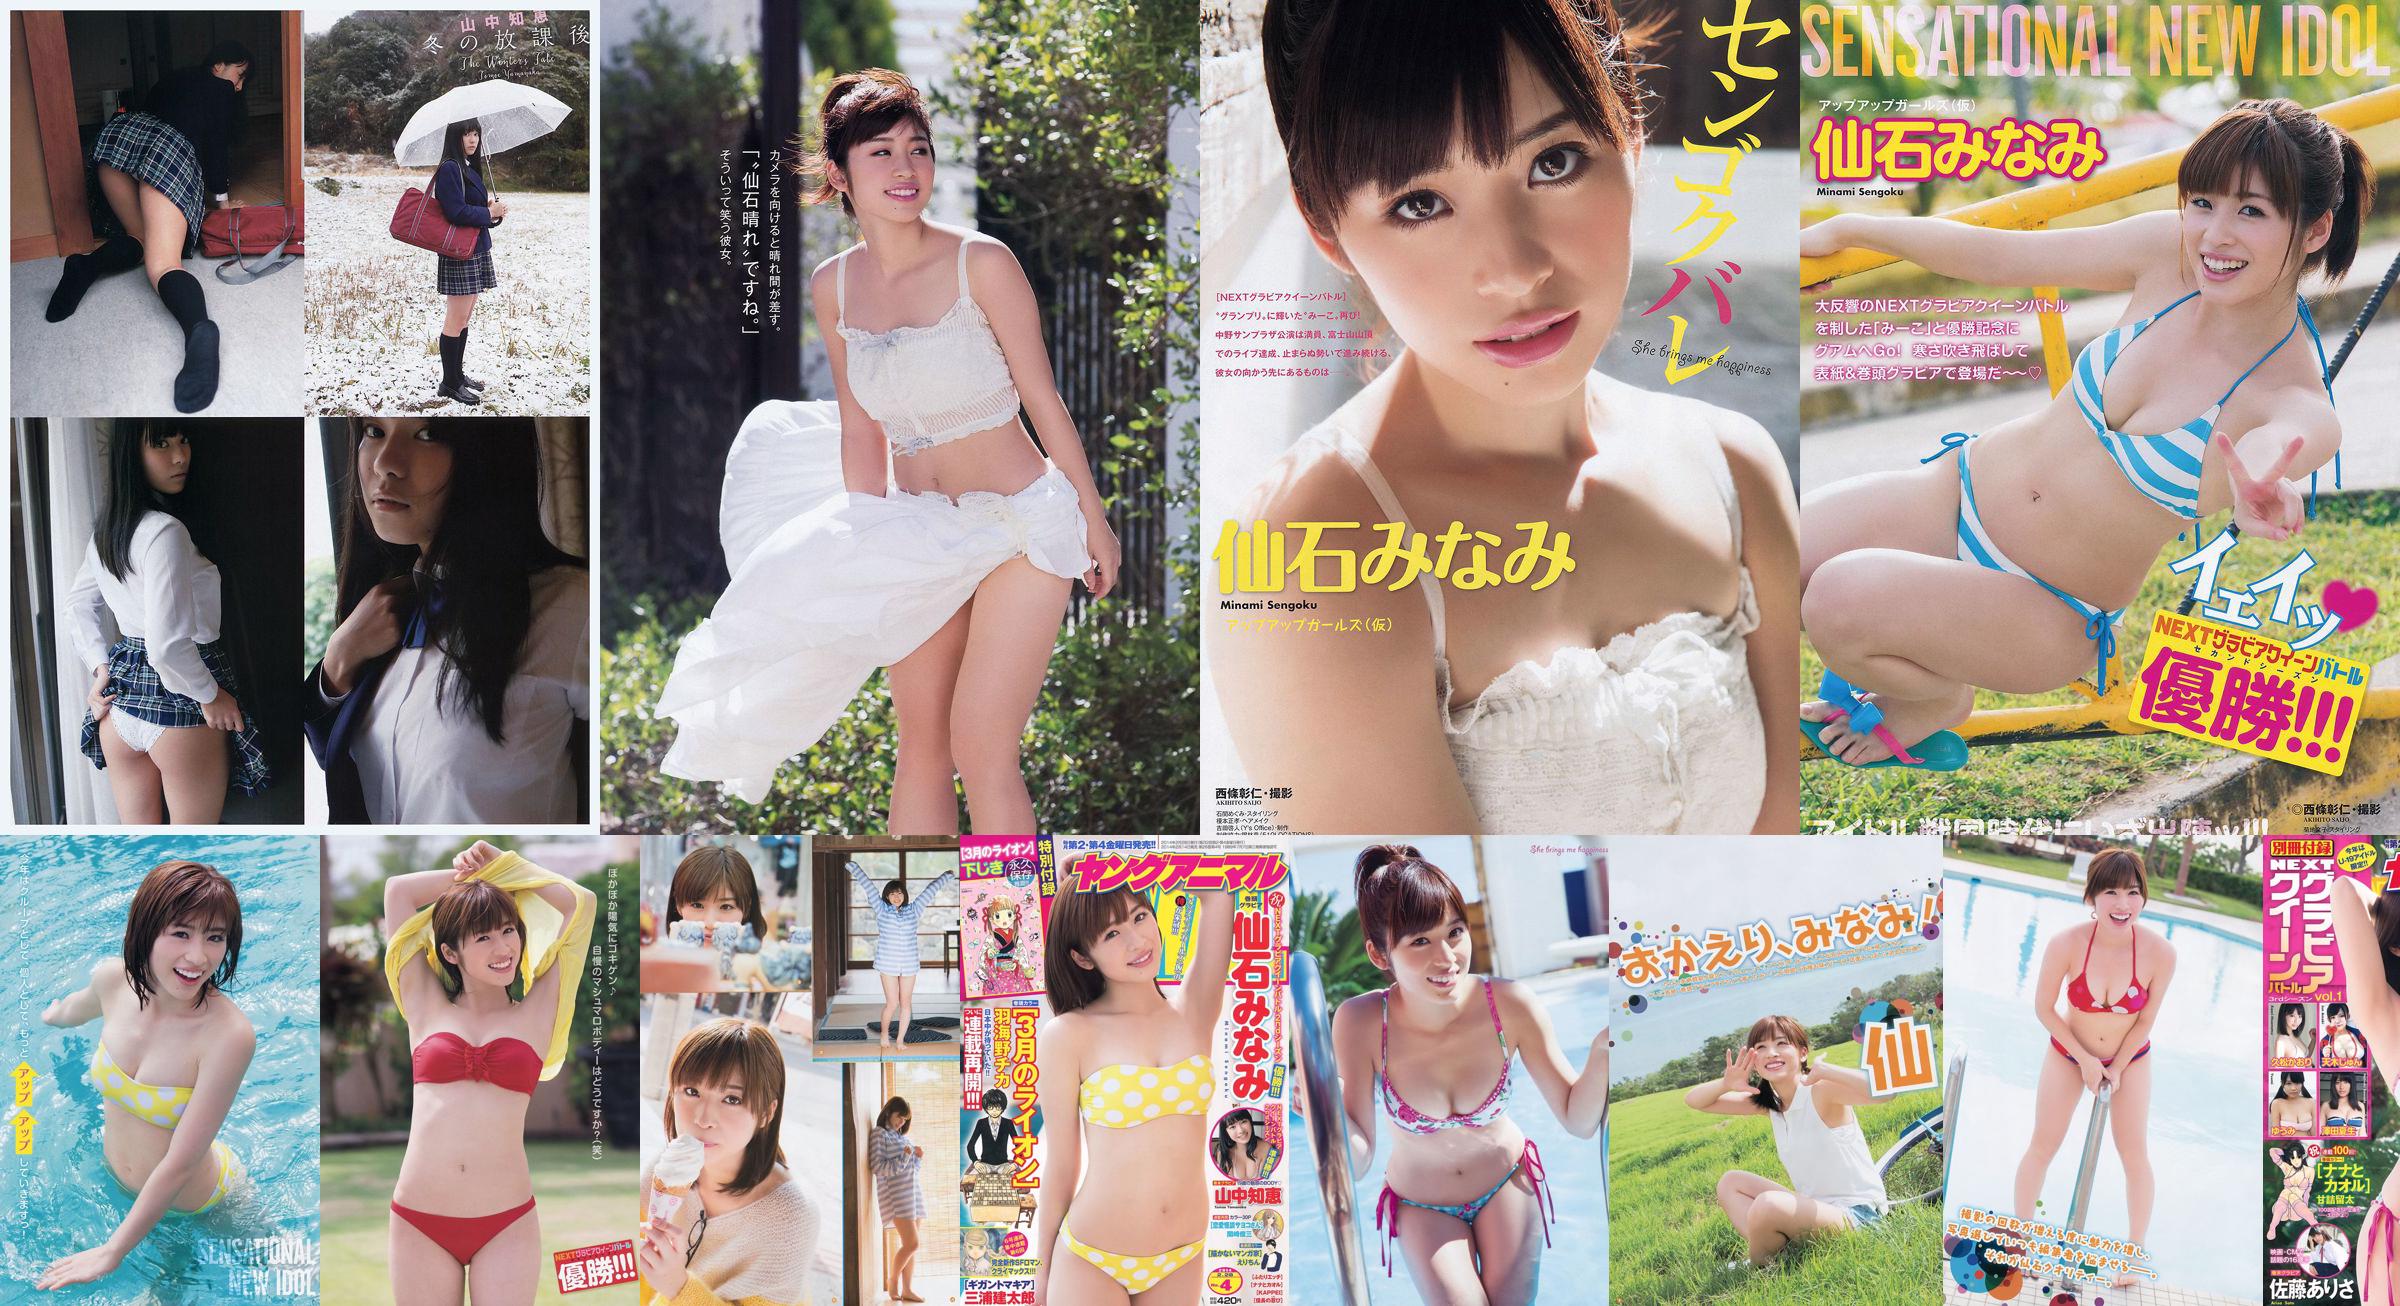 [Young Gangan] Senshi みなみ Yamanaka Tomoji Shiraishi アヤ Kataoka Saya 2014 No.01 Photo Magazine No.a509ac Pagina 1